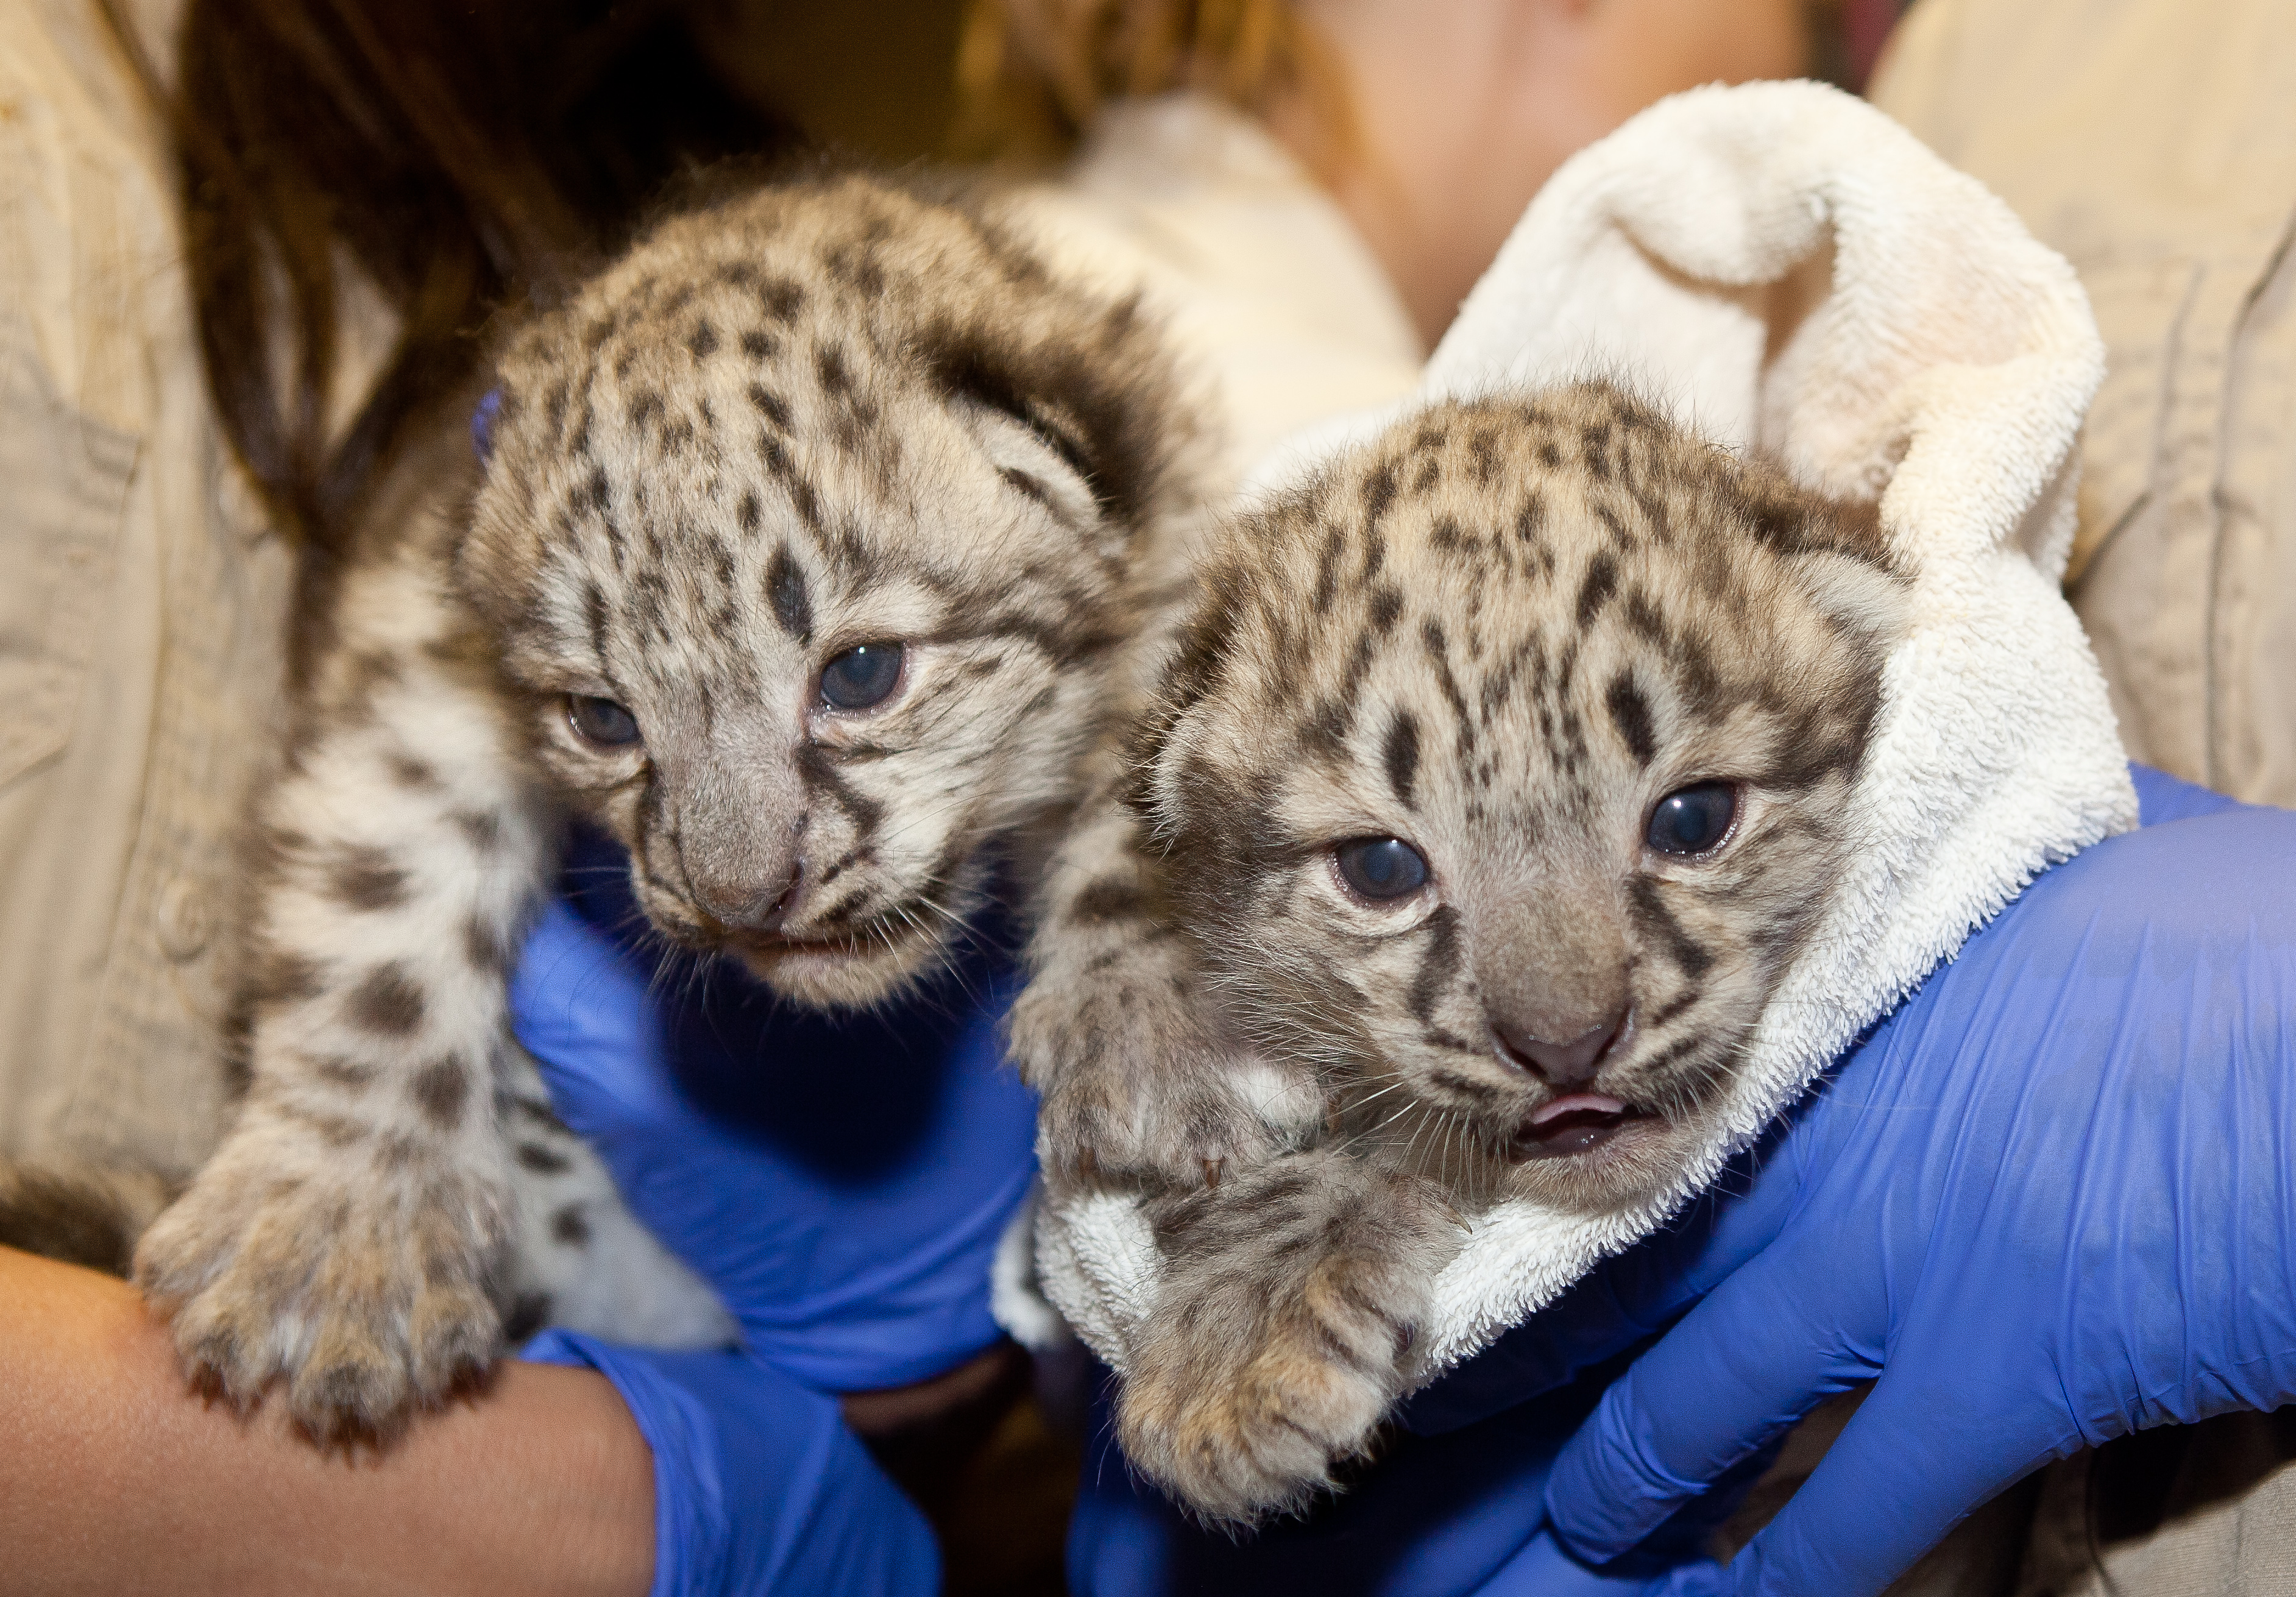 snow leopard babies